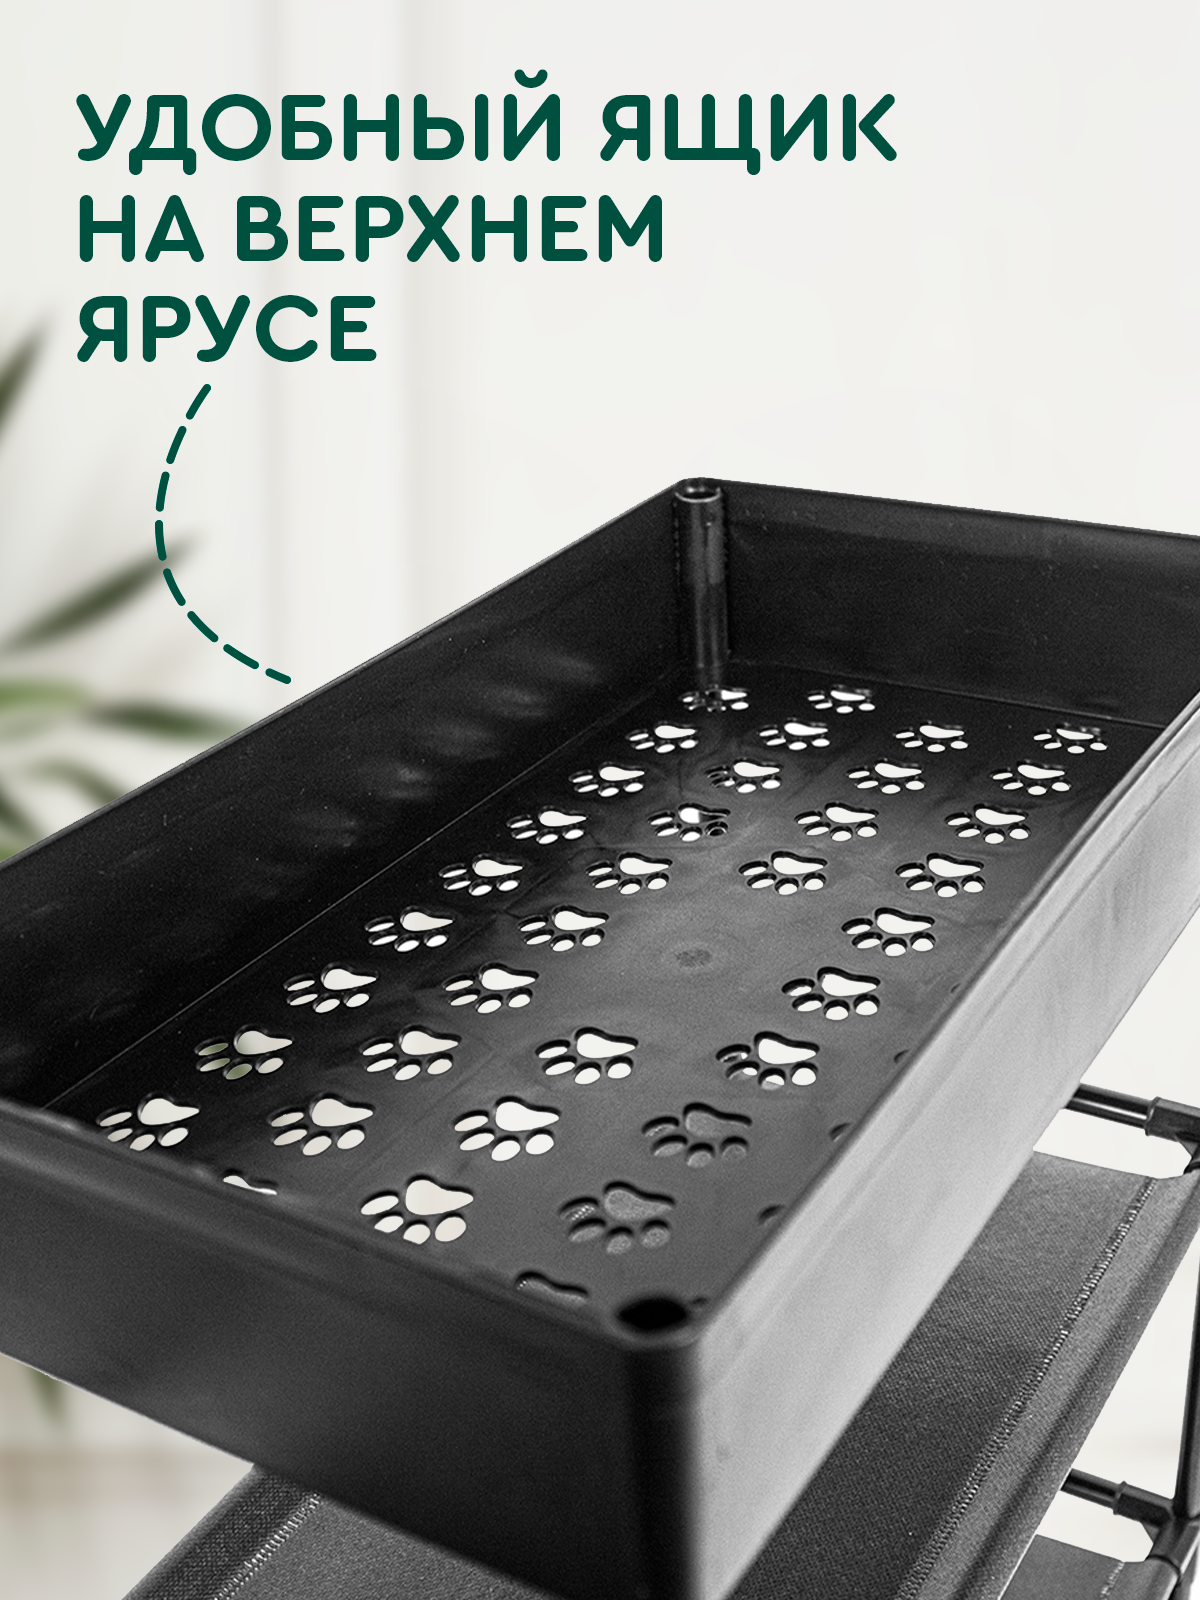 Стеллаж (4 полки и 1 ящик, 59х22х81 см, черный) Hans&Helma этажерка пластик для обуви универсальный хранение вещей косметики домой на дачу ванную - фотография № 3